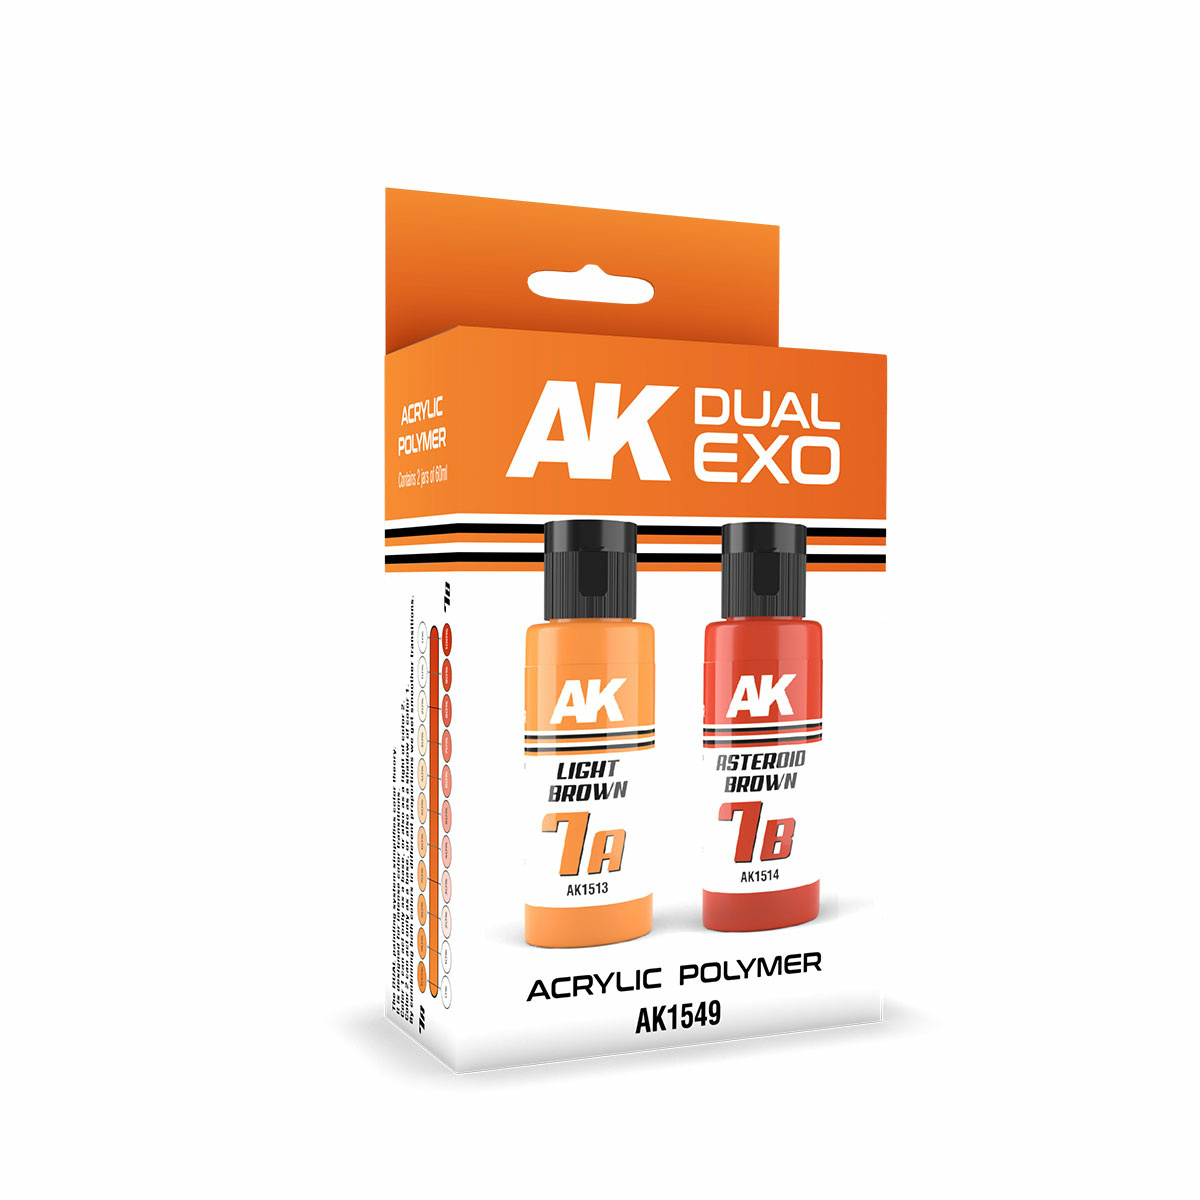 AK1549 AK Interactive Paint Set Dual Exo - 7A Light Brown & 7B Asteroid Brown